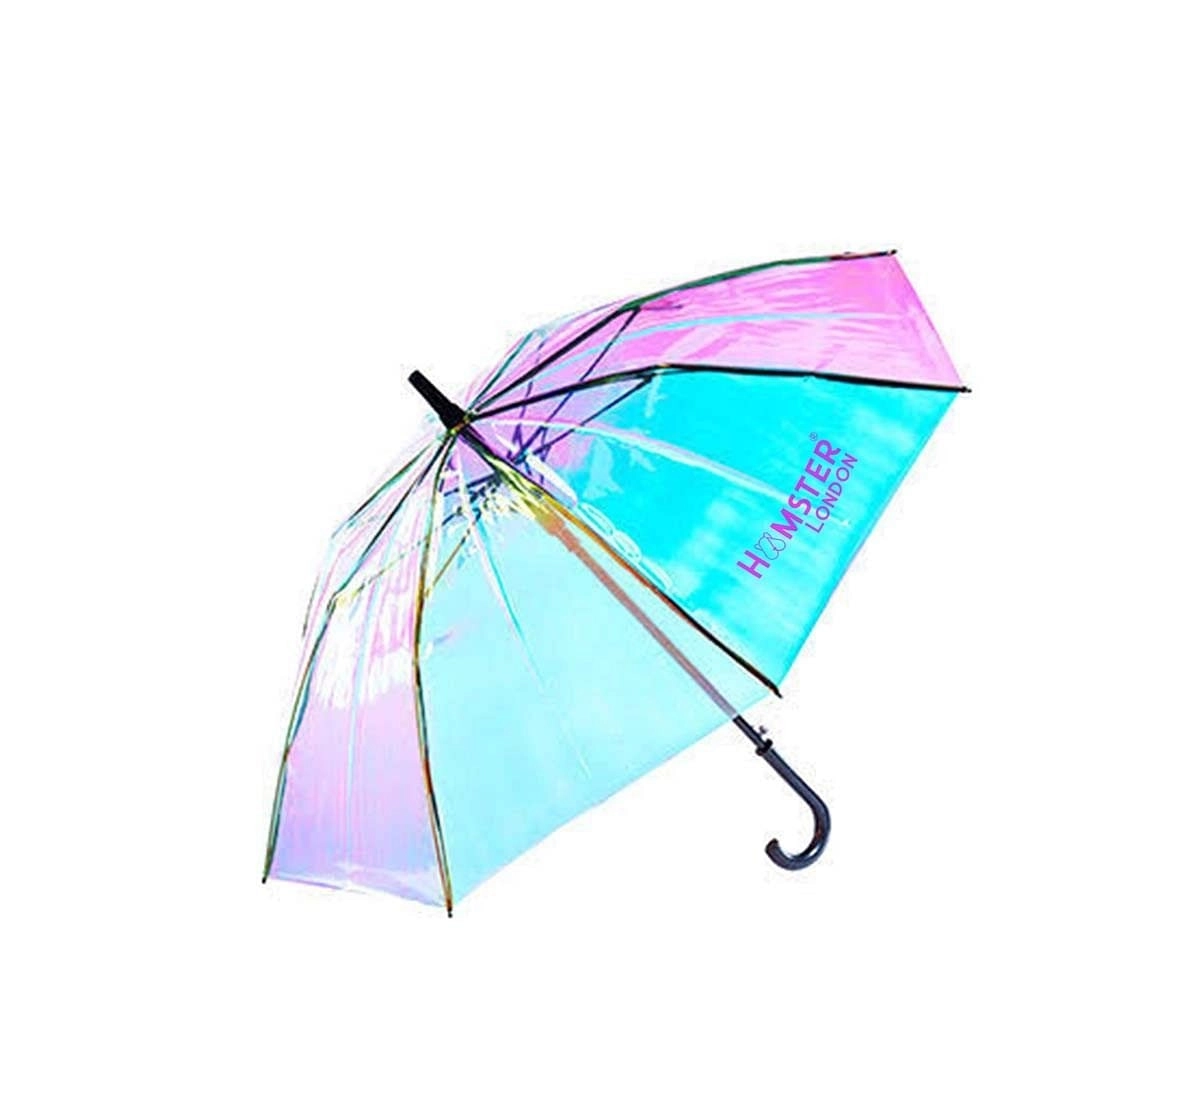 Hamster London Shiny Holographic Umbrella Black Novelty for Kids Age 3Y+ (Black)